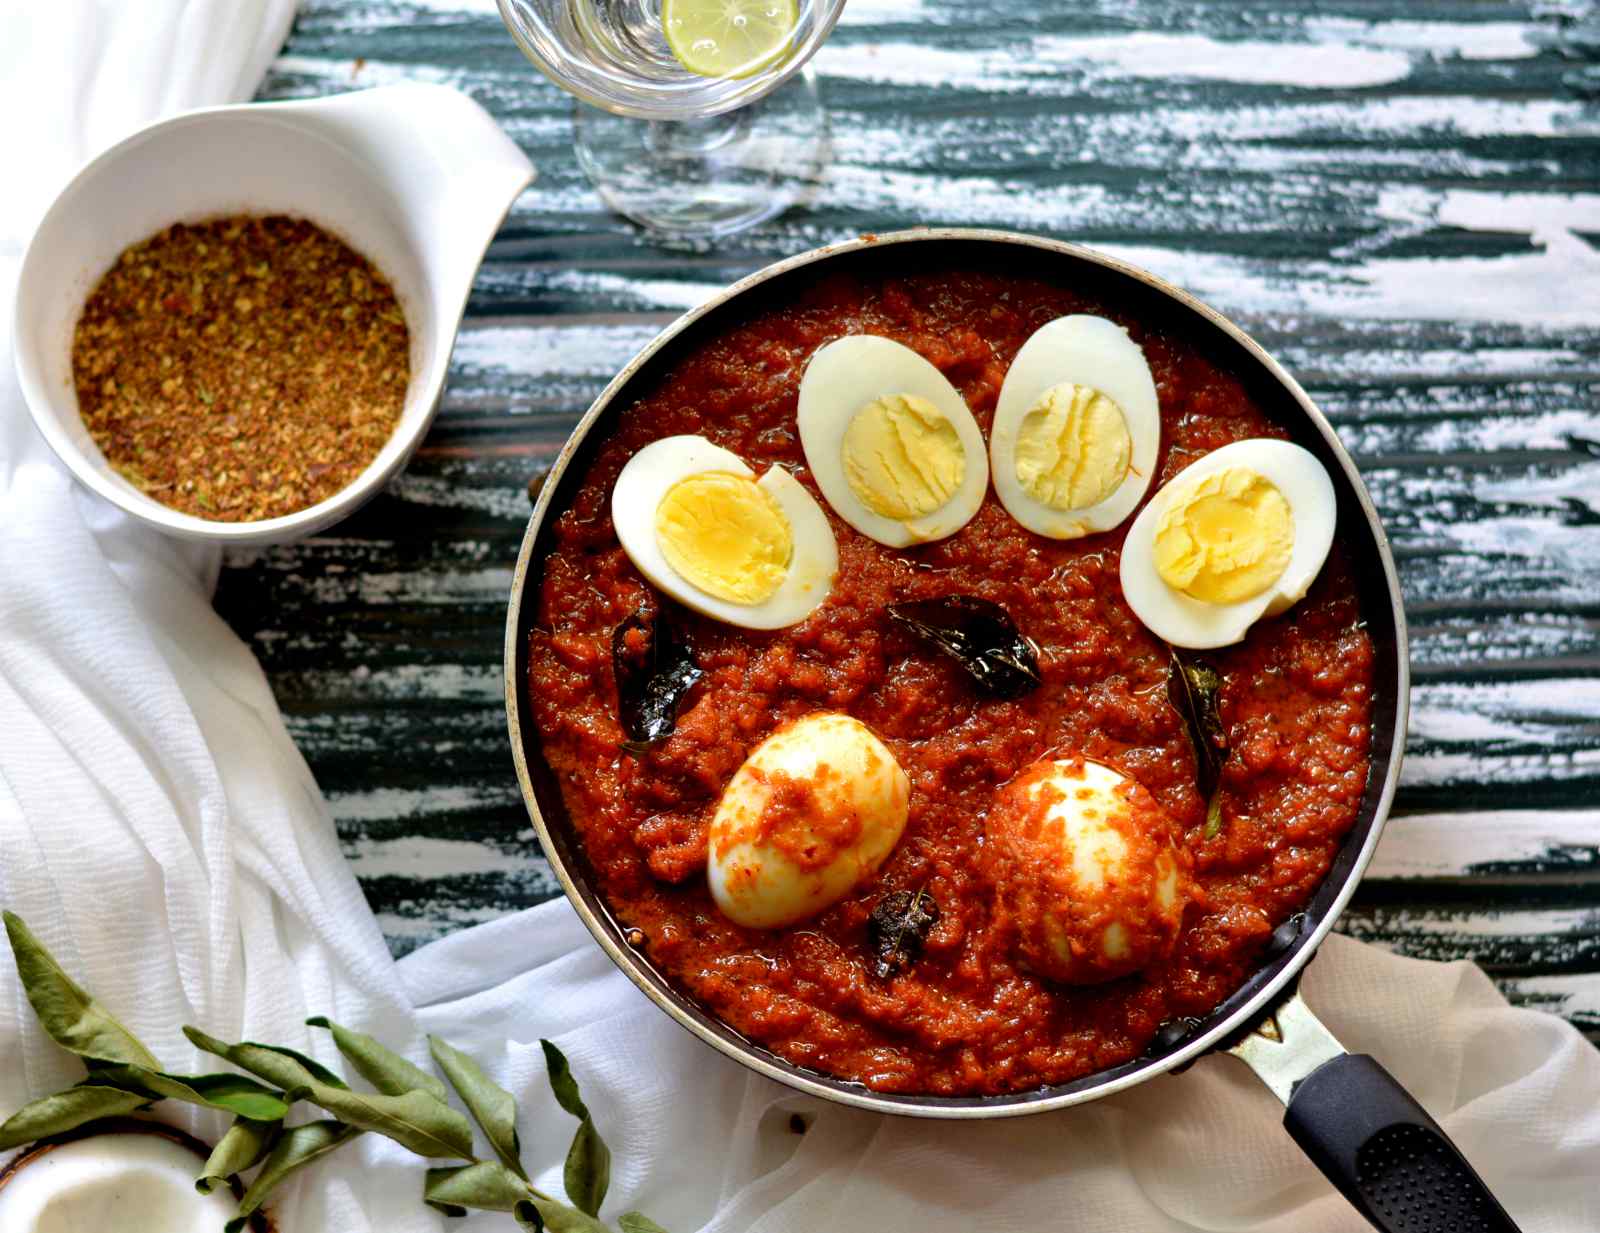 श्रीलंकन अंडे की करी रेसिपी - Sri Lankan Egg Curry (Recipe In Hindi)